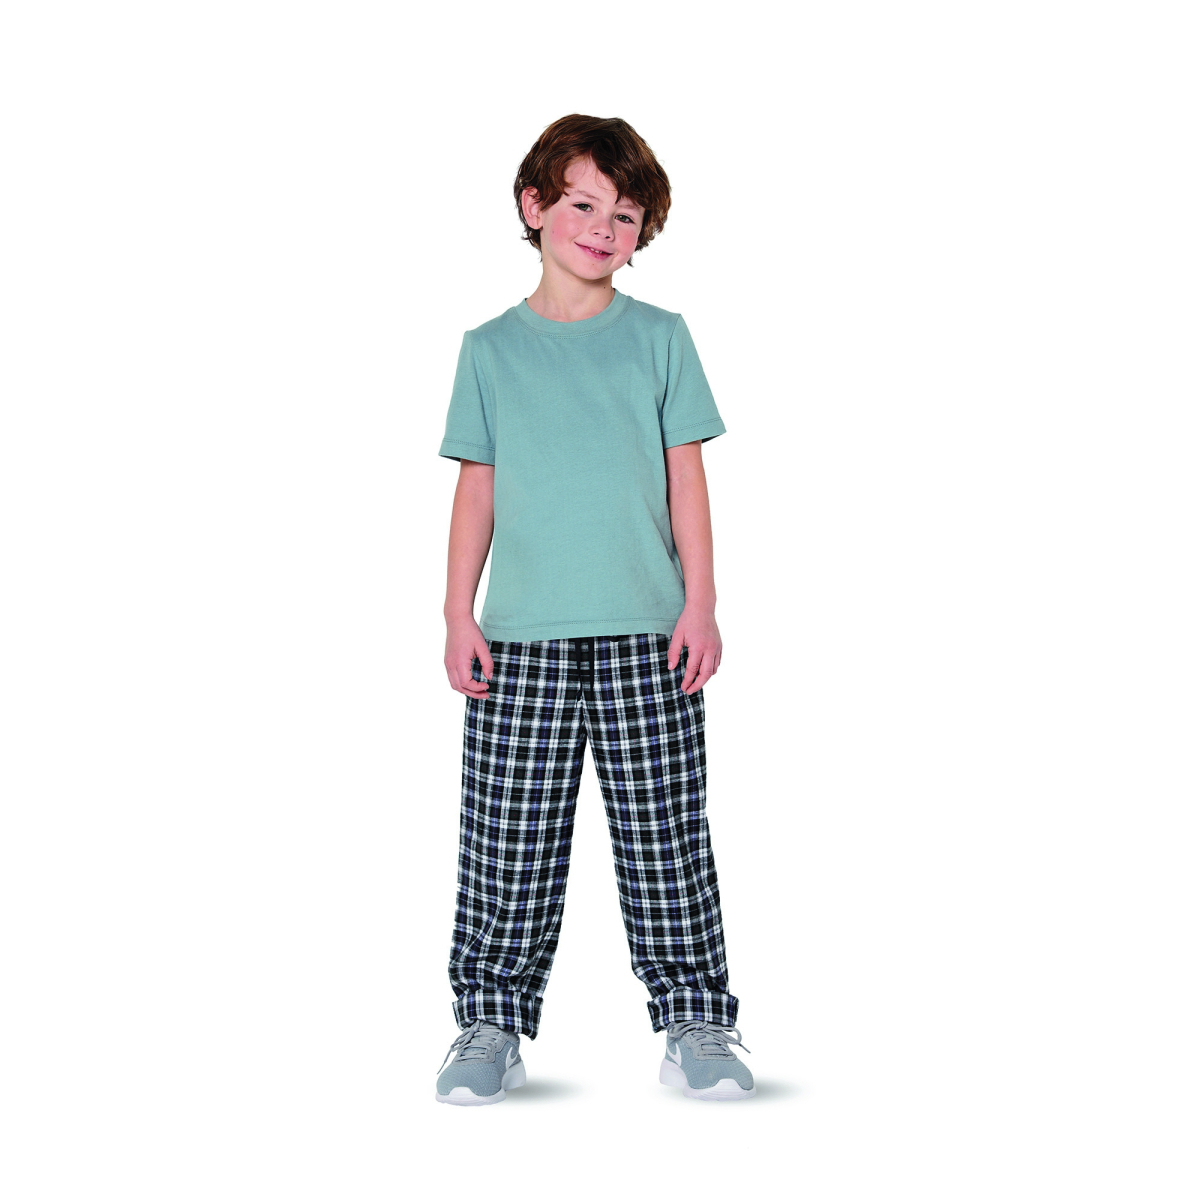 T-Shirt and Pants Combination No.9288 Burda Kids Sewing Pattern